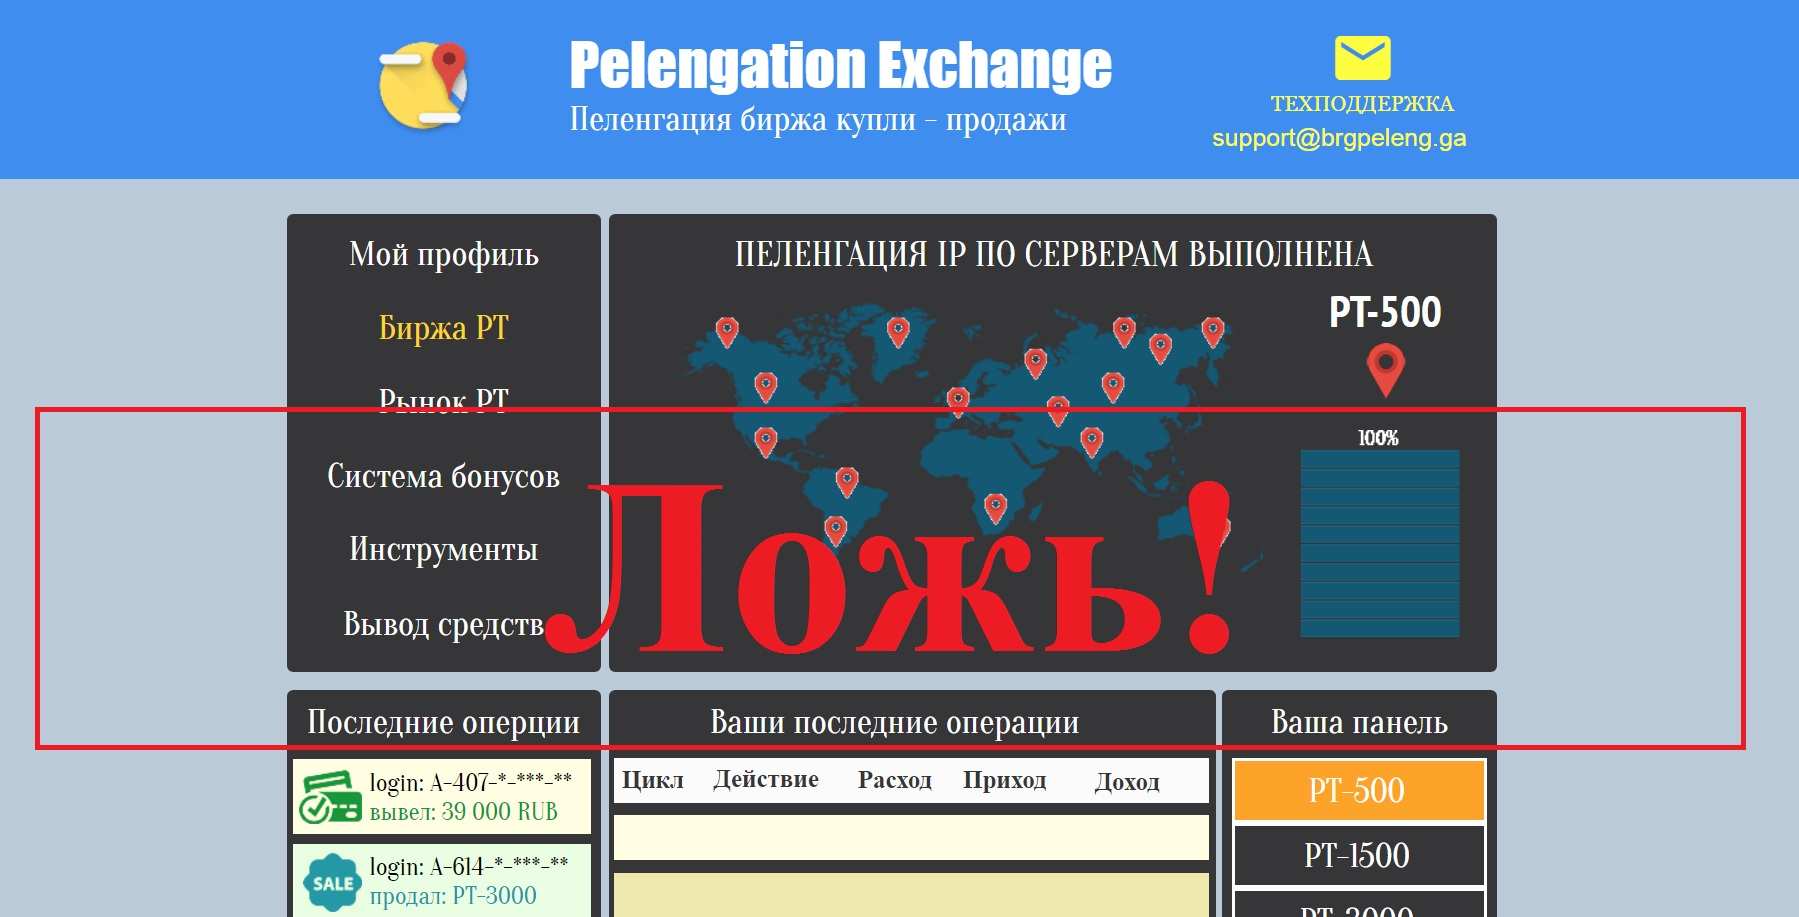 Блог Ивана Добролюбова – отзывы о бирже пеленгации Pelengation Exchange